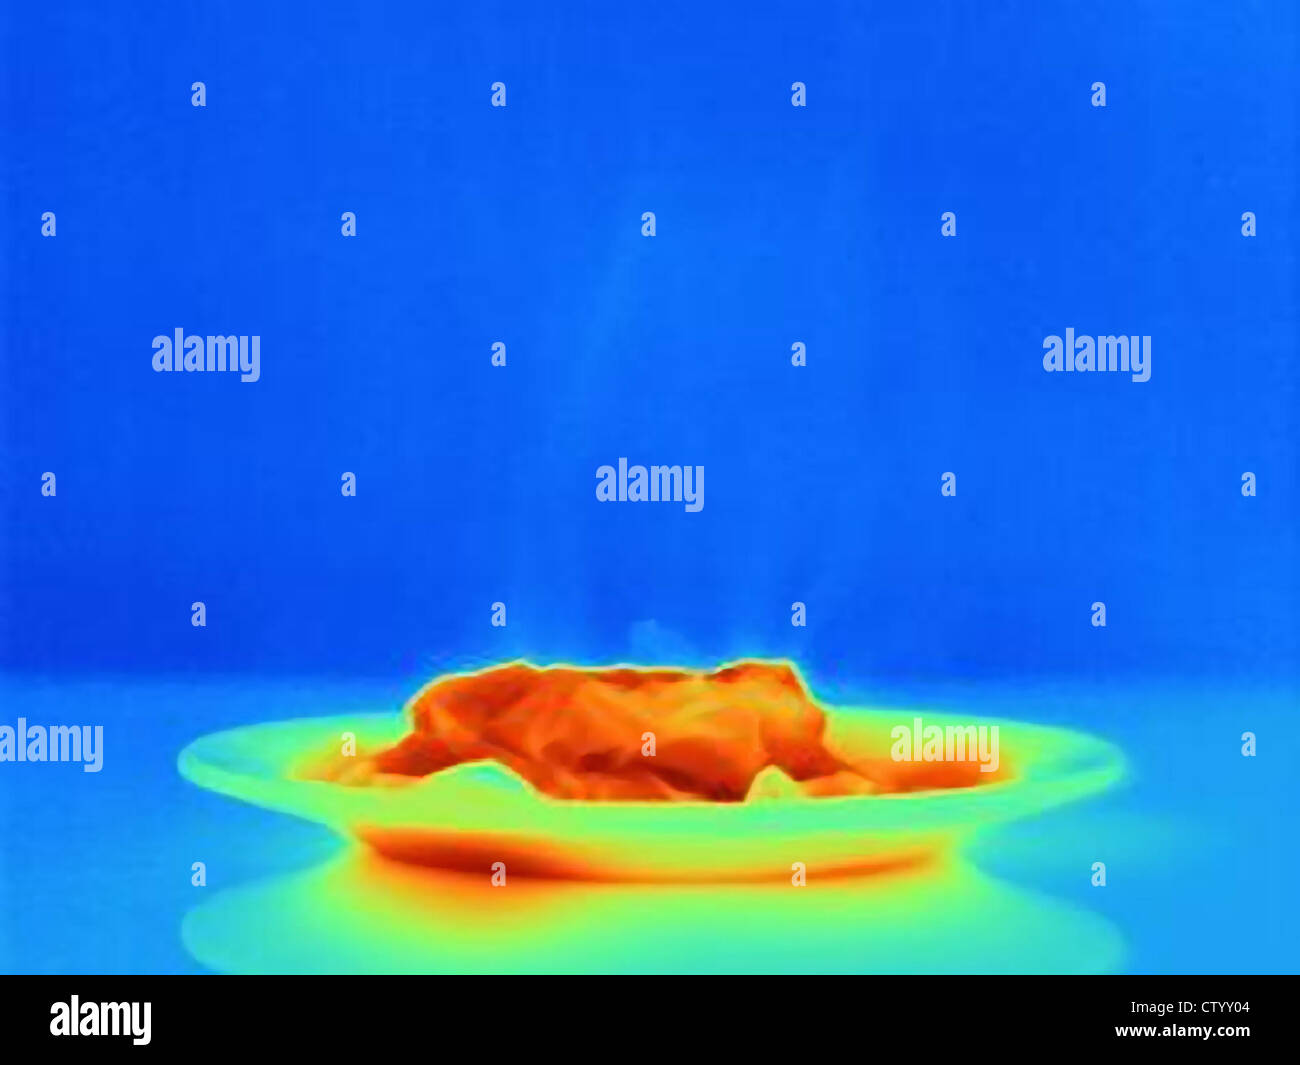 Piatto termico immagini e fotografie stock ad alta risoluzione - Alamy